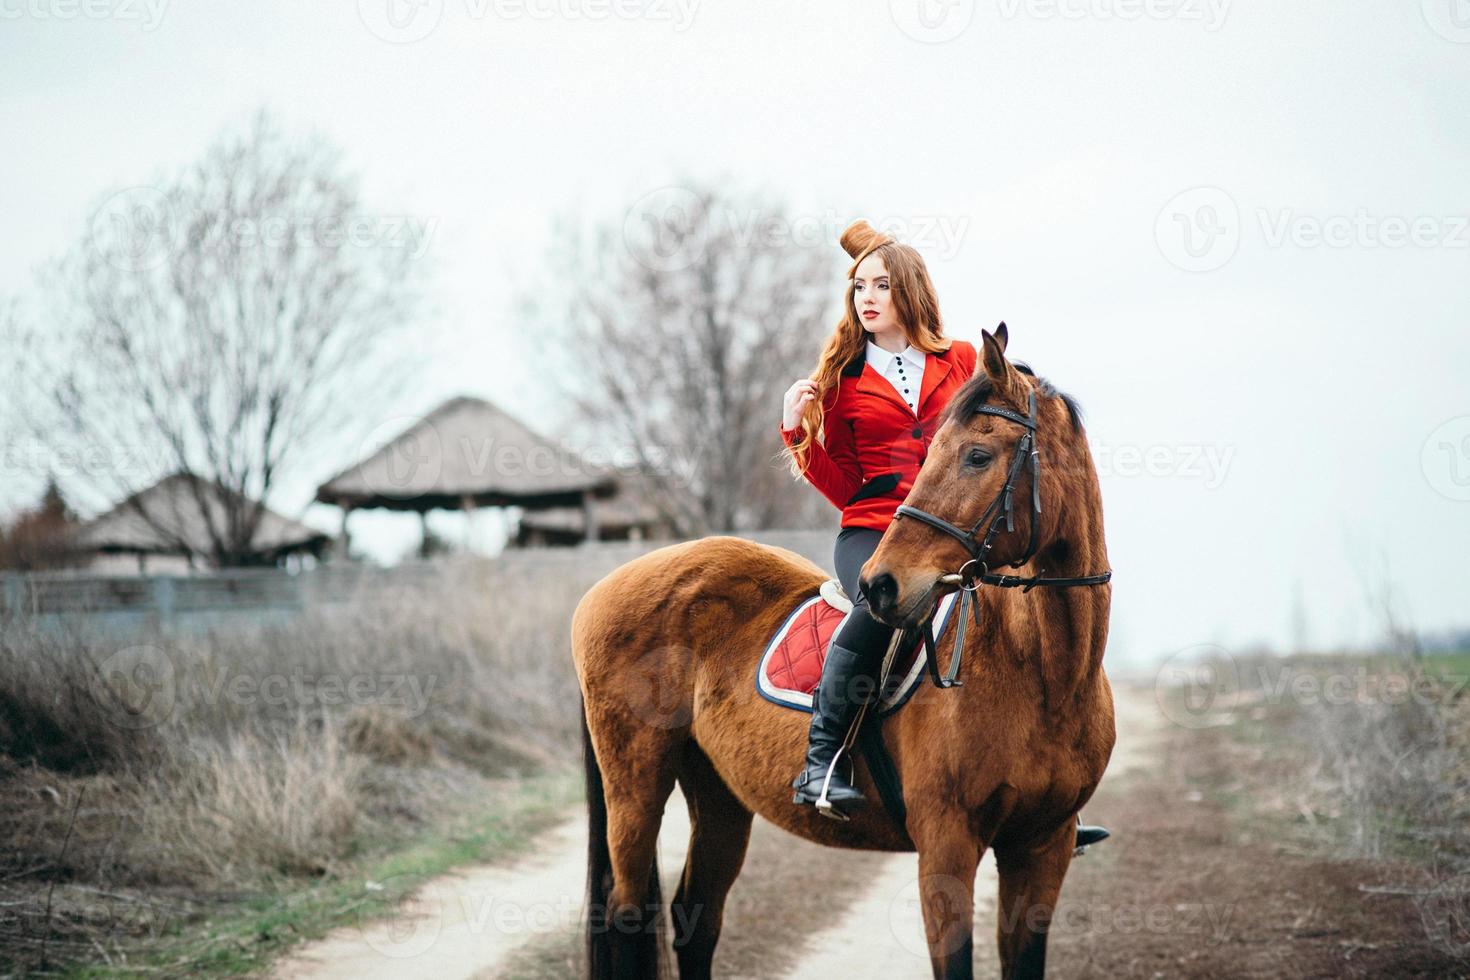 jóquei ruiva em um casaco de lã vermelho e botas de cano altas pretas com um cavalo foto